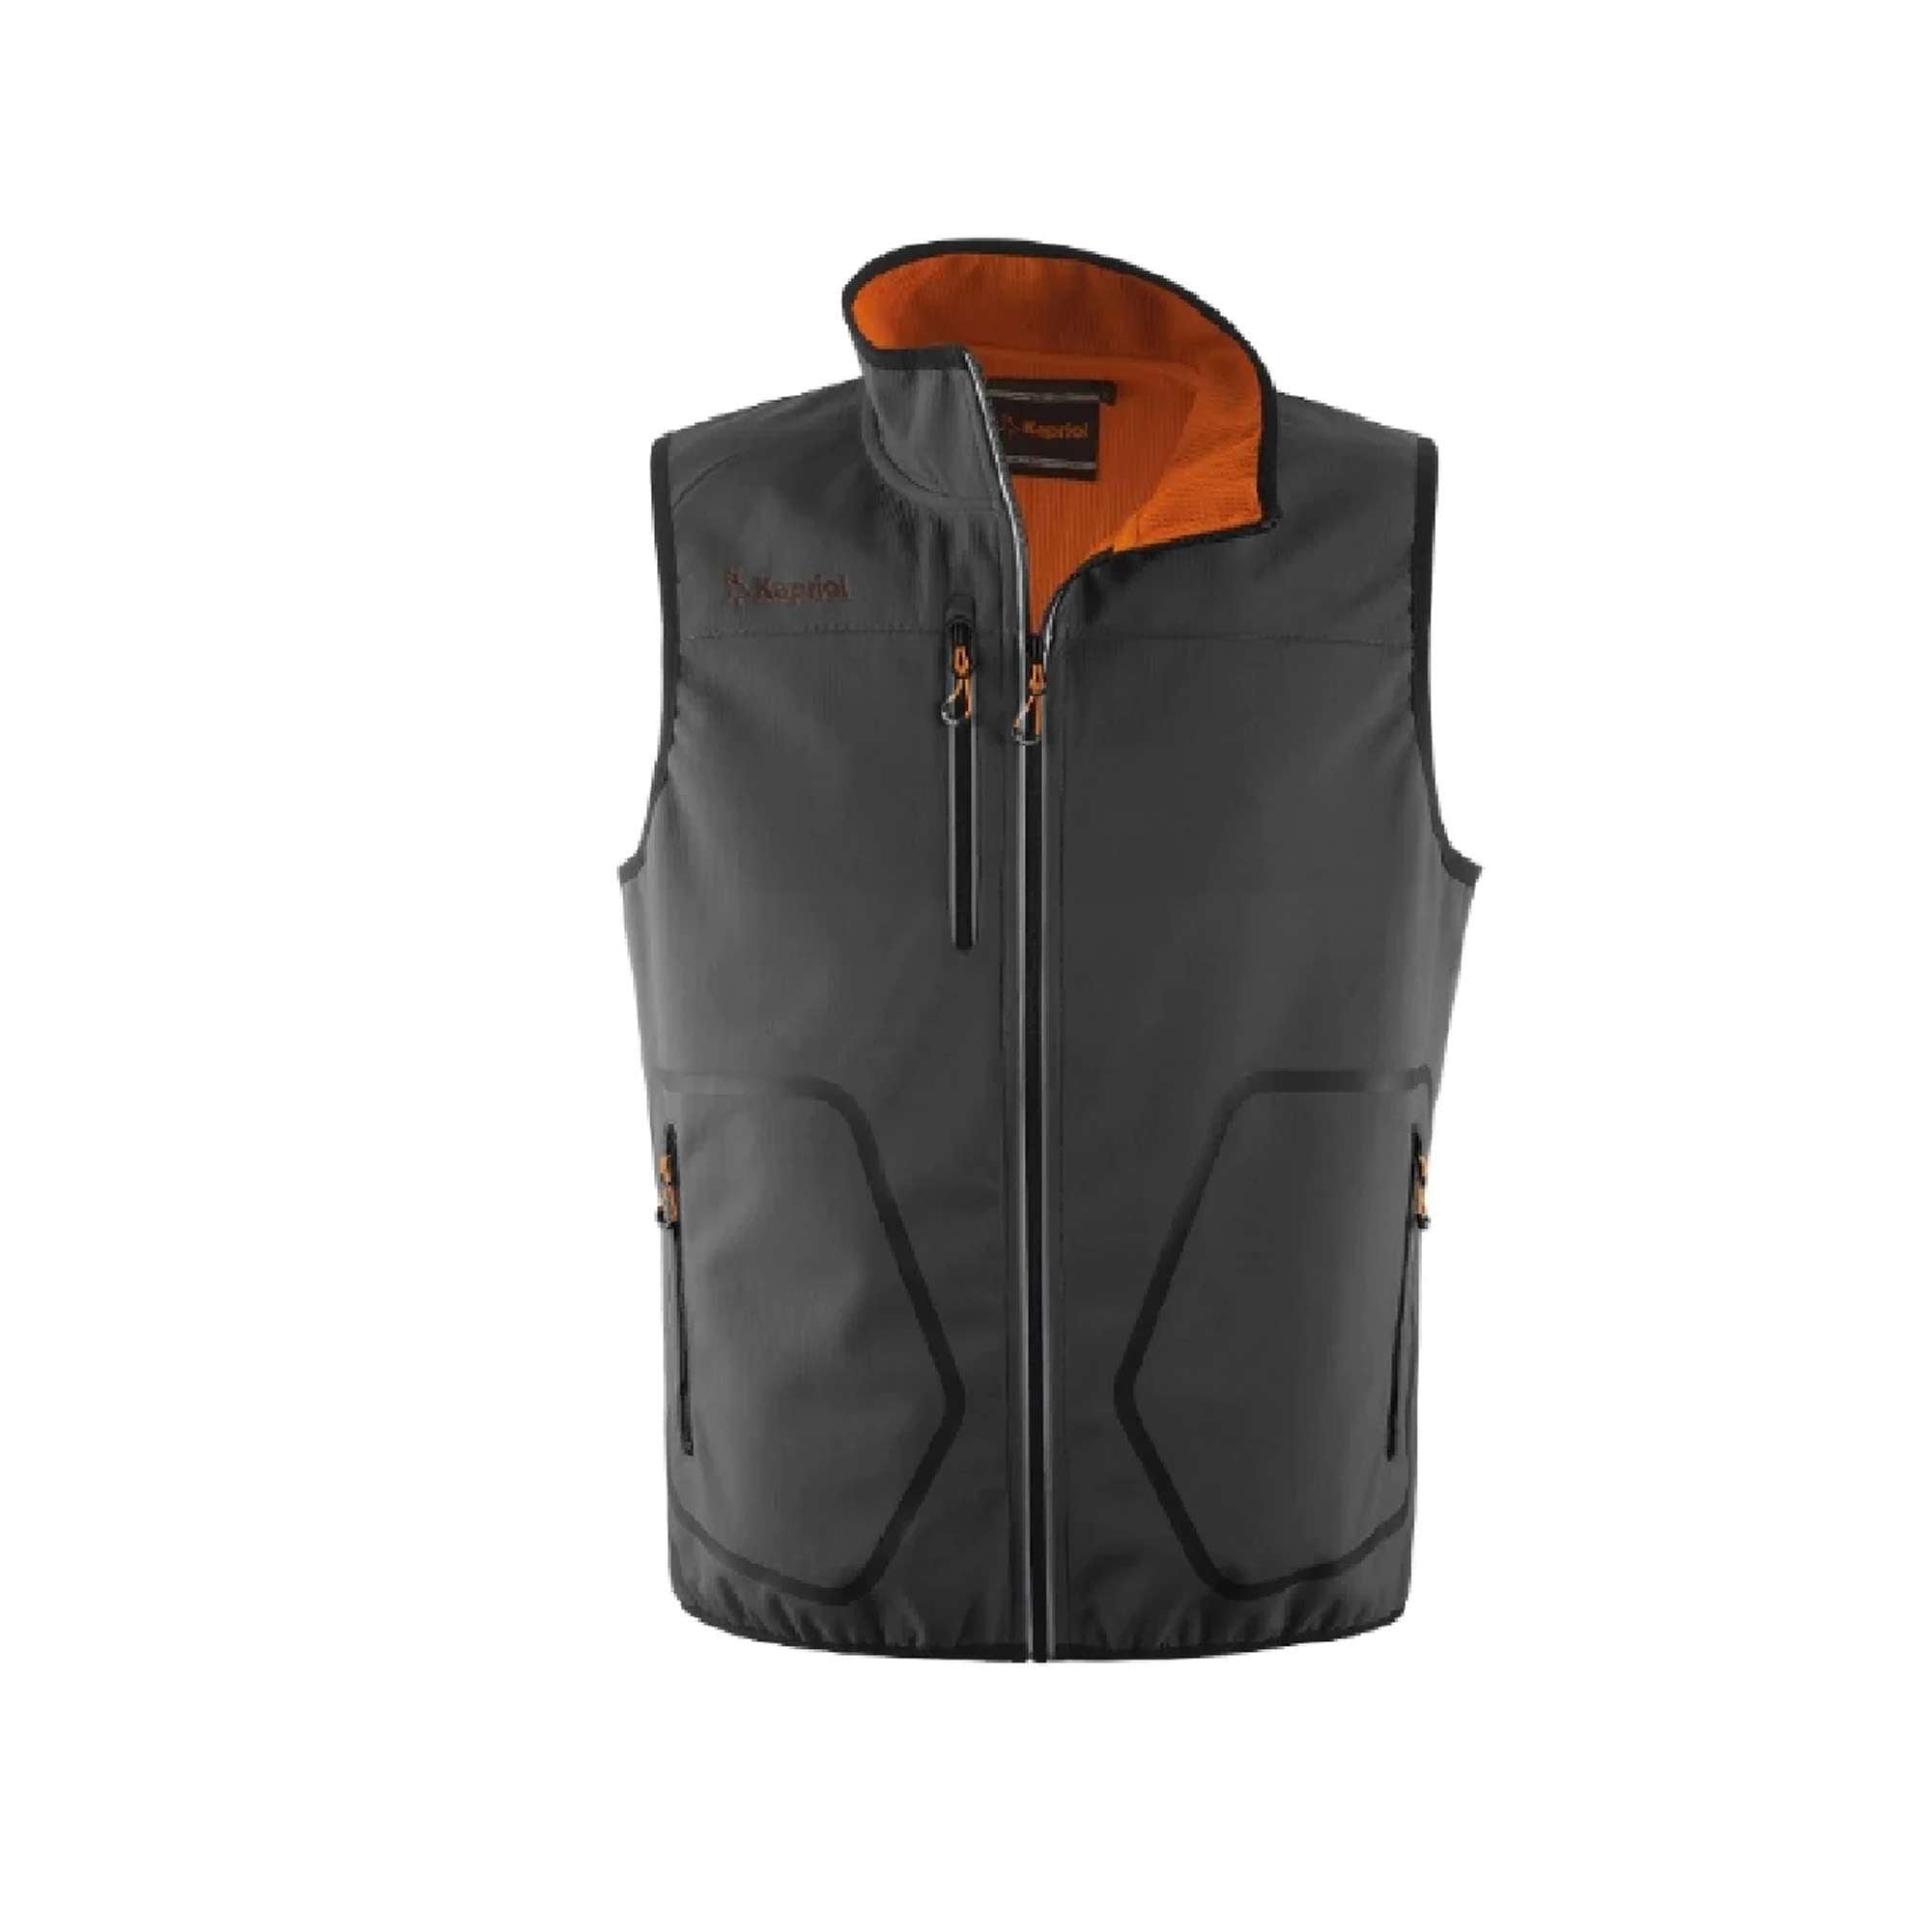 Tech vest gray/orange SIZE.M/L/XL/XXL - 36835 Kapriol